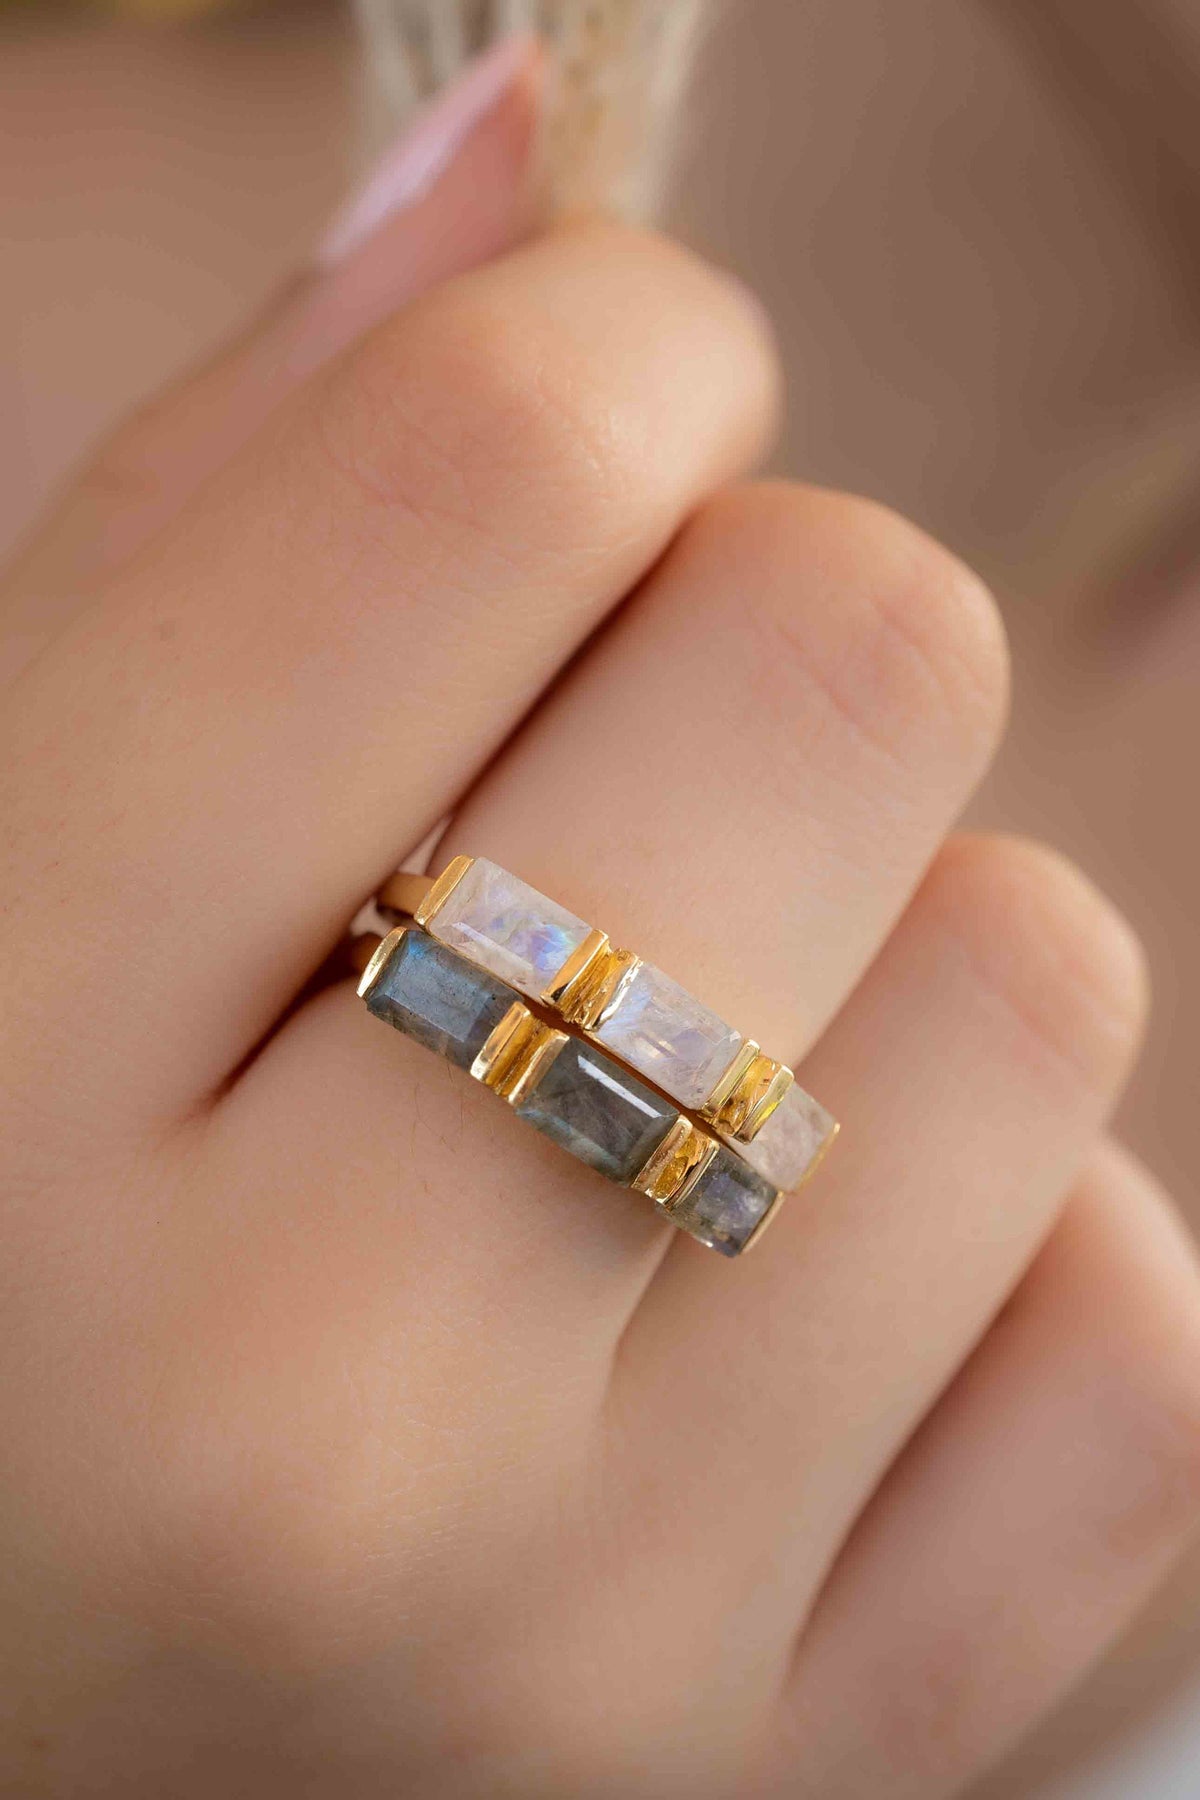 Labradorite Ring *  Stackable * Gold Plated Ring * Statement Ring *Gemstone Ring * Labradorite * Delicate Ring * Modern * BJR267